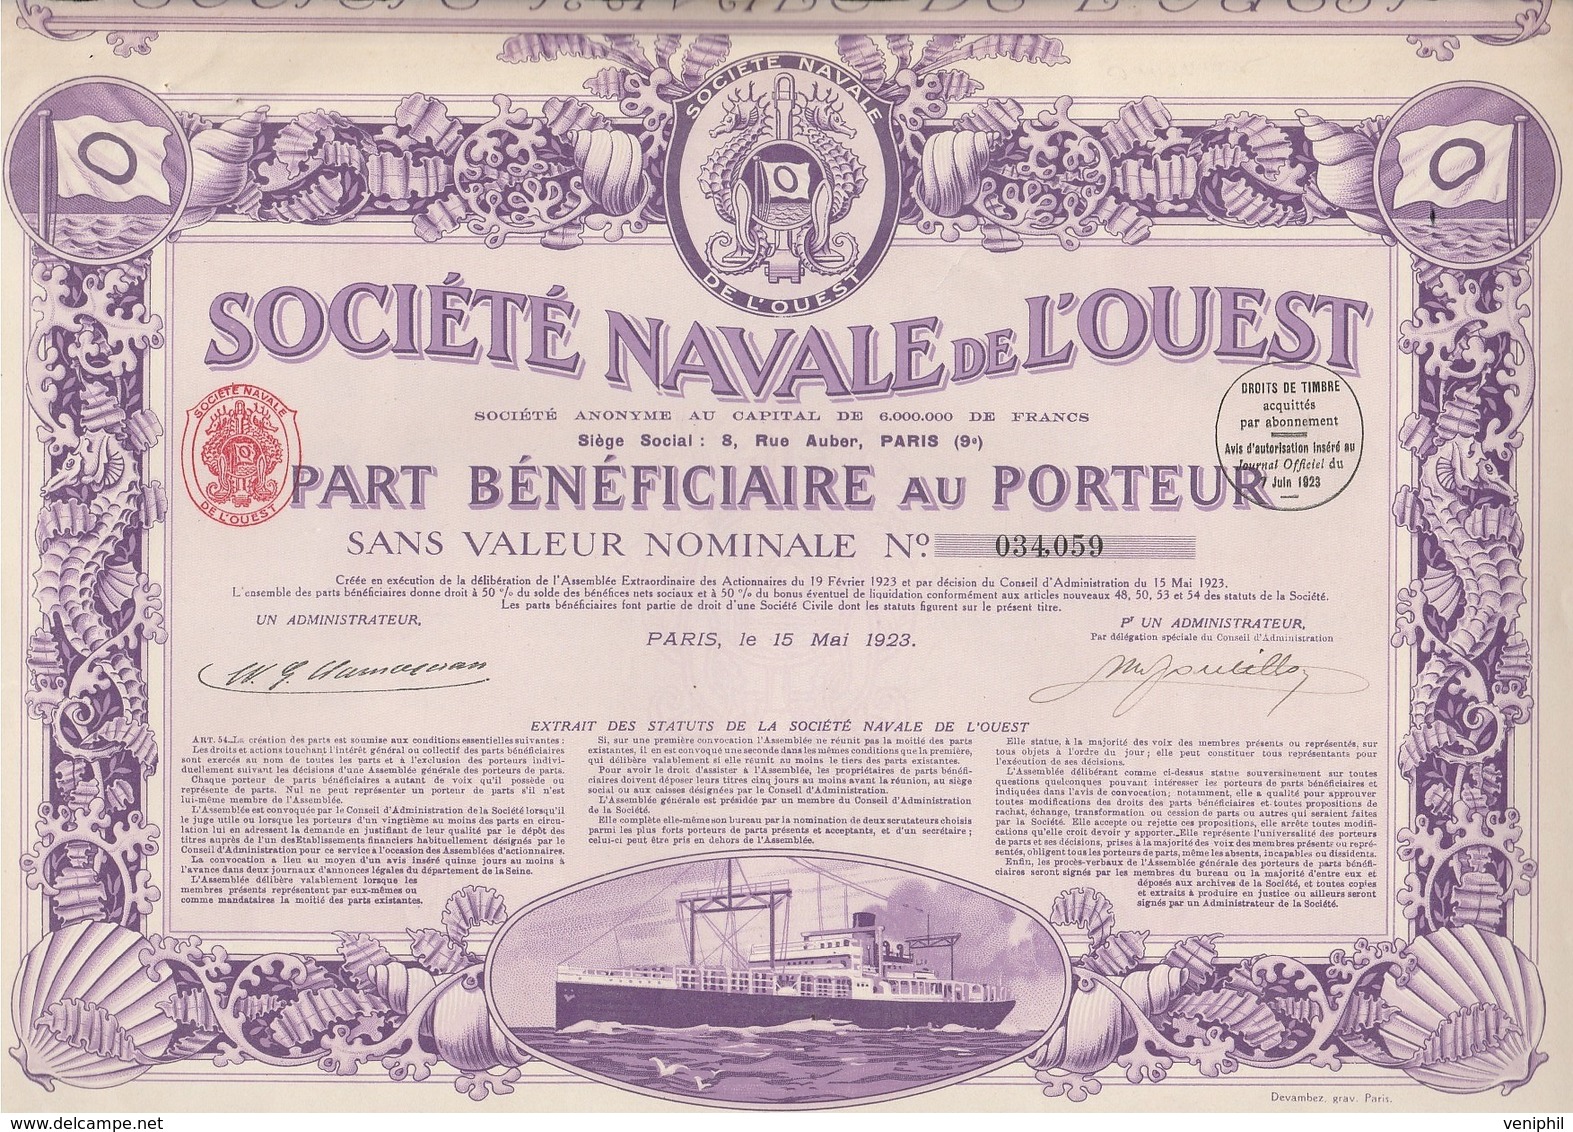 SOCIETE NAVALE DE L'OUEST -PART BENEFICIAIRE- ANNEE 1923 - COULEUR VIOLETTE - Navigation